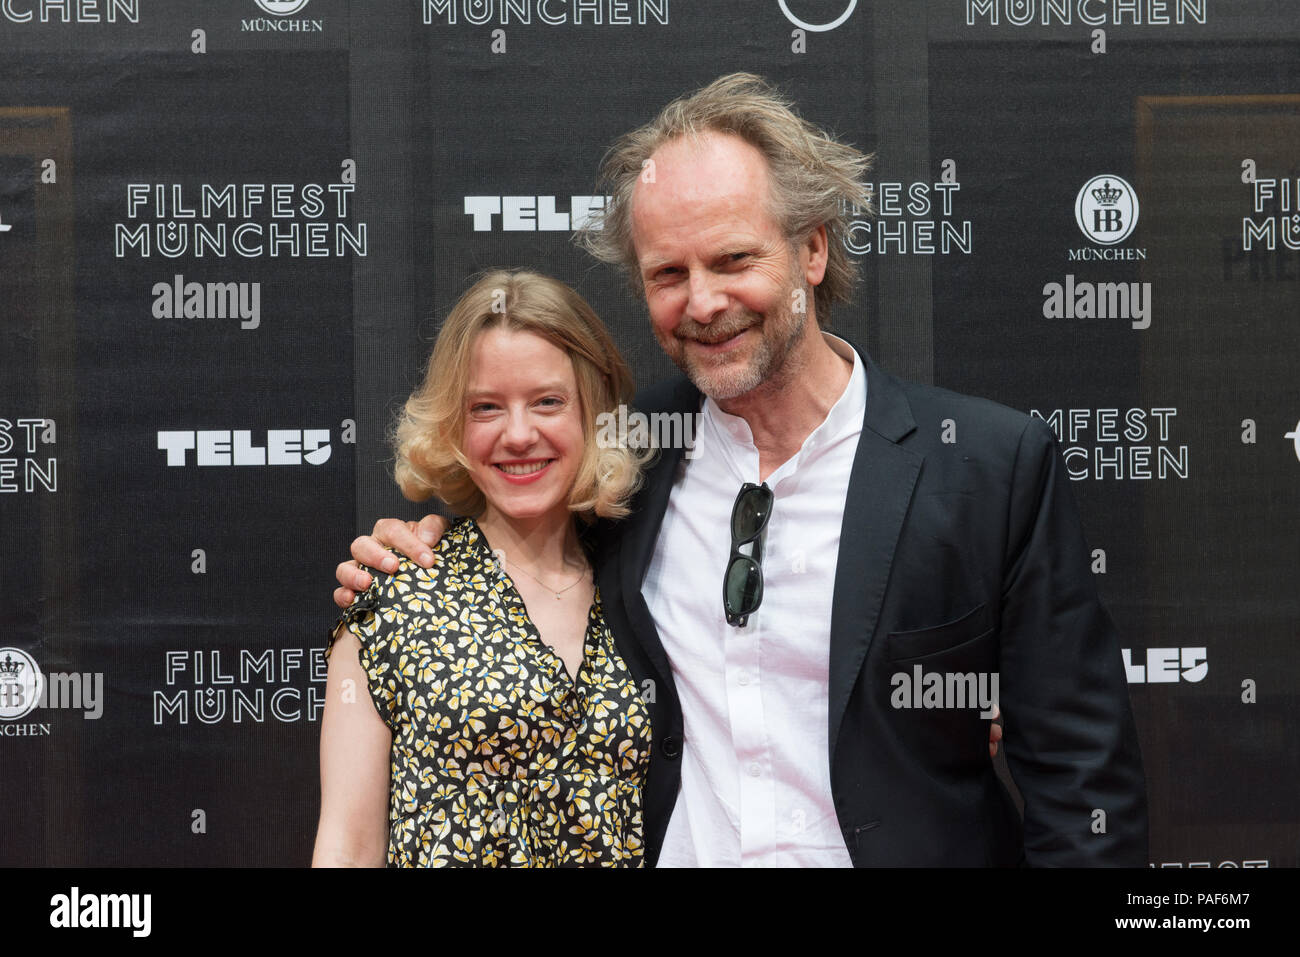 Regisseur Philipp Gröningand Schauspielerin Julia Zange an einem Fotoshooting auf dem Filmfest München 2018 gesehen Stockfoto